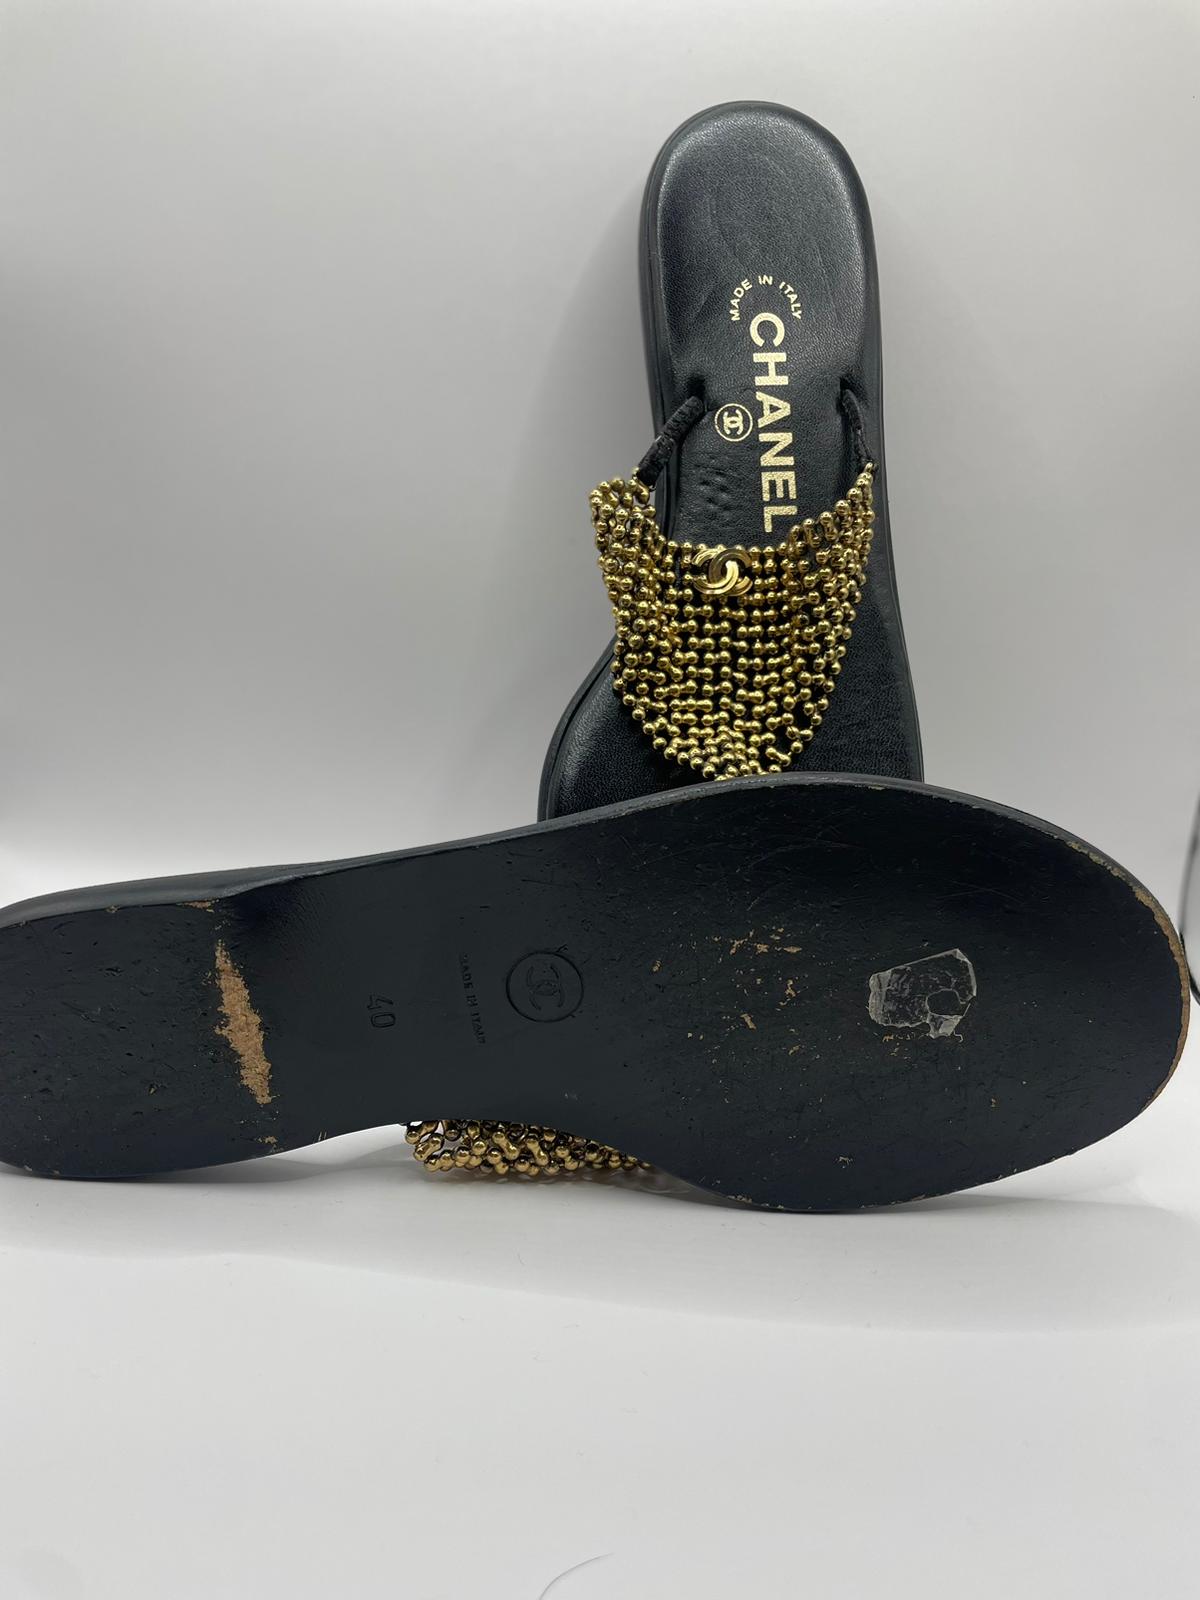 Chanel flip flops size 40